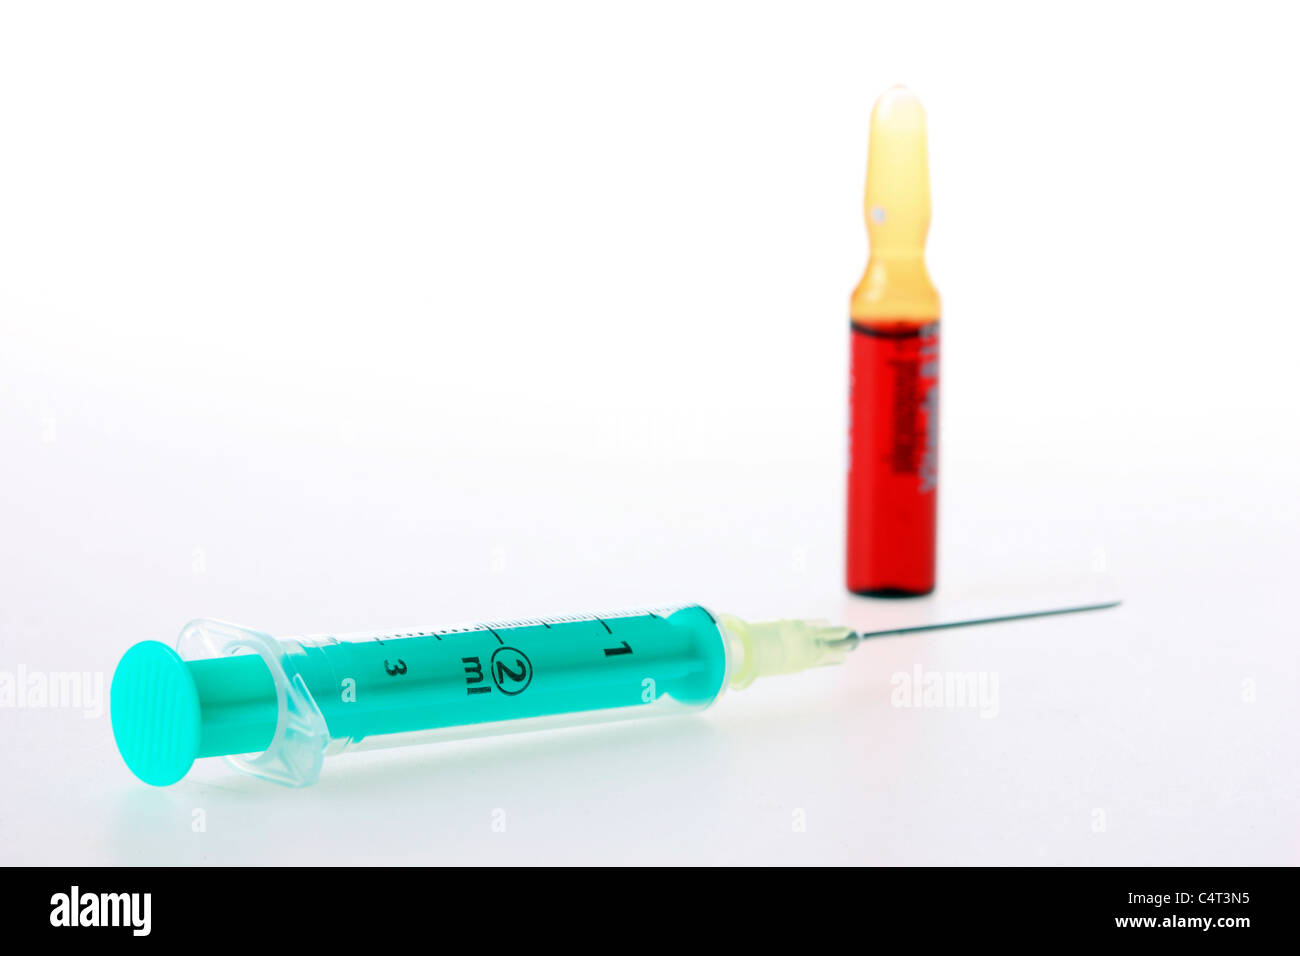 Injektionskanüle, medizinische Spritze, eine Spritze mit Medikament von  einem Fläschchen zu füllen Stockfotografie - Alamy